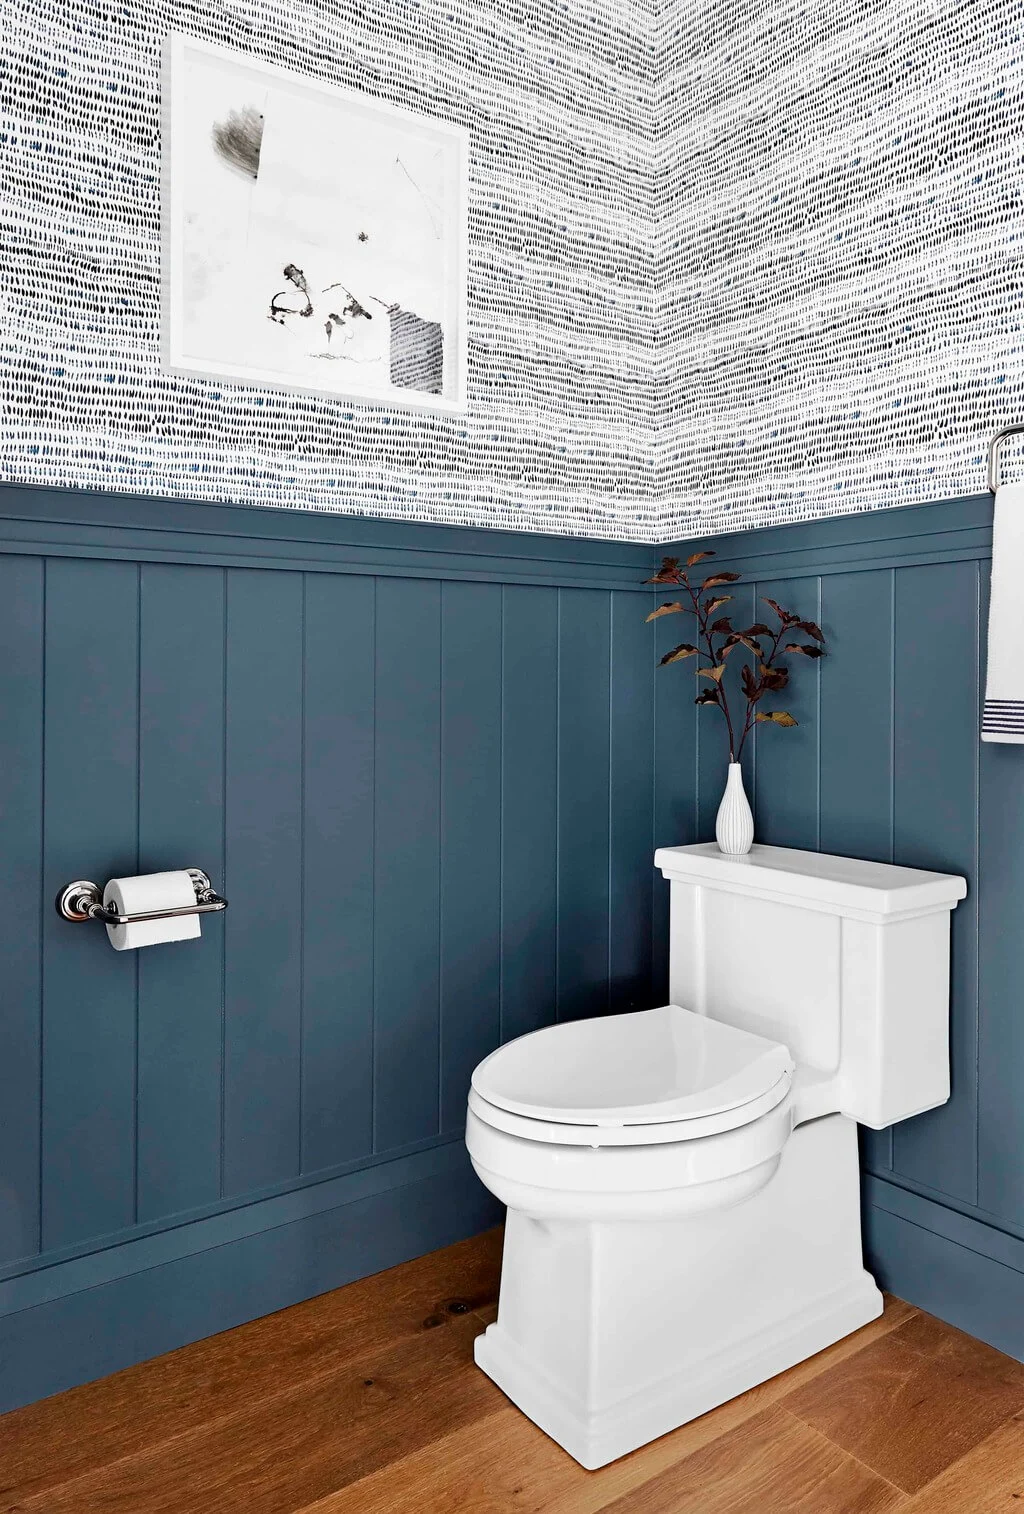 Mix Wallpaper + Wainscoting bathroom decor idea